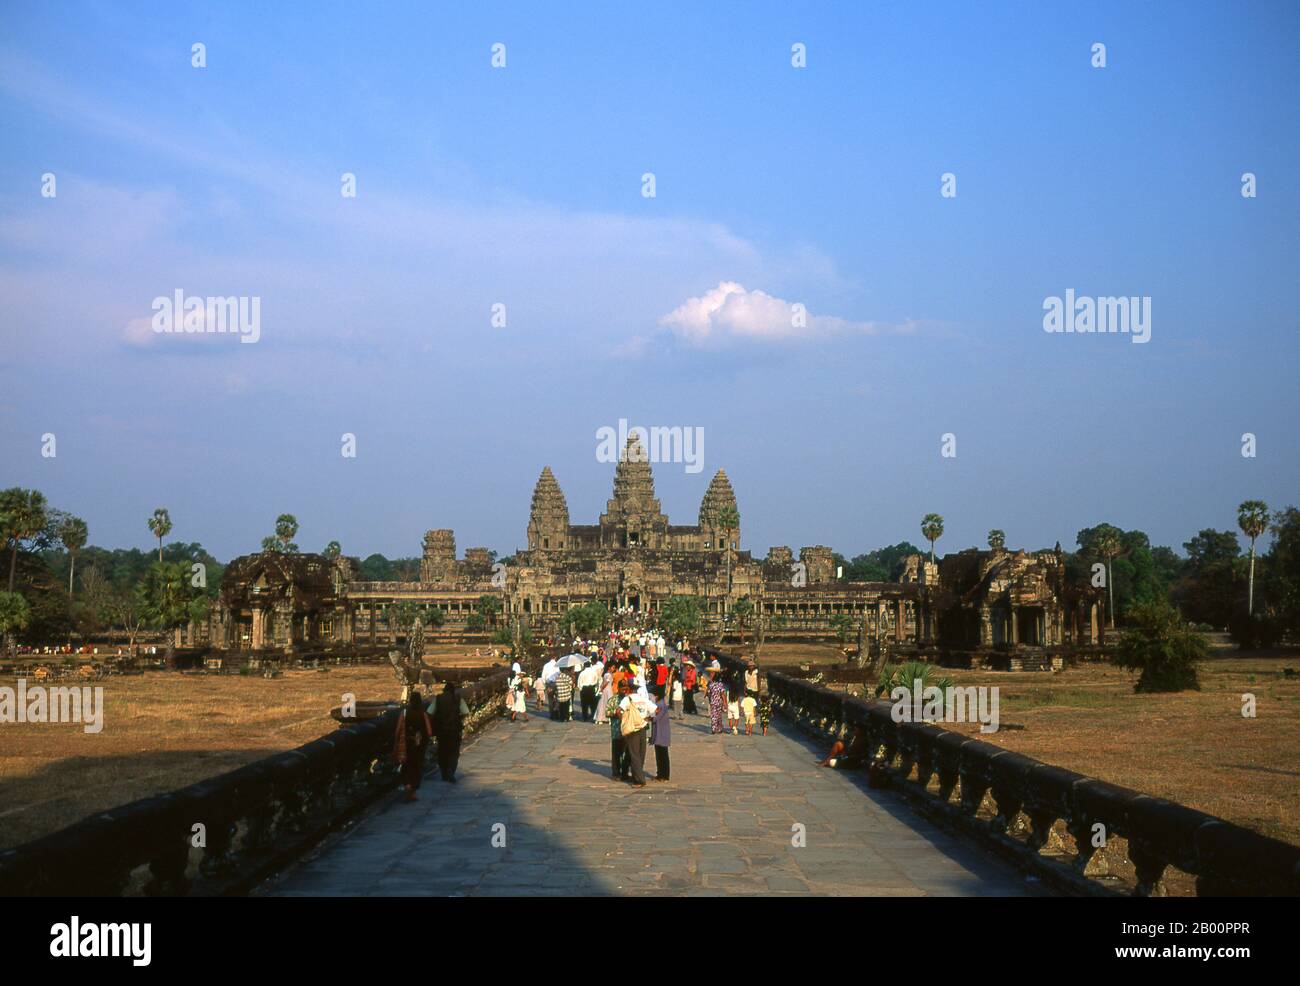 Cambogia: L'approccio occidentale a Angkor Wat. Angkor Wat fu costruito per il re Suryavarman II (governato dal 1113 al 50) all'inizio del XII secolo come tempio di stato e capitale. Come il tempio meglio conservato del sito di Angkor, è l'unico ad essere rimasto un centro religioso significativo sin dalla sua fondazione - prima indù, dedicato al dio Vishnu, poi buddista. E' il più grande edificio religioso del mondo. Il tempio è in cima allo stile classico dell'architettura Khmer. È diventato un simbolo della Cambogia, che appare sulla sua bandiera nazionale, ed è l'attrazione principale del paese. Foto Stock